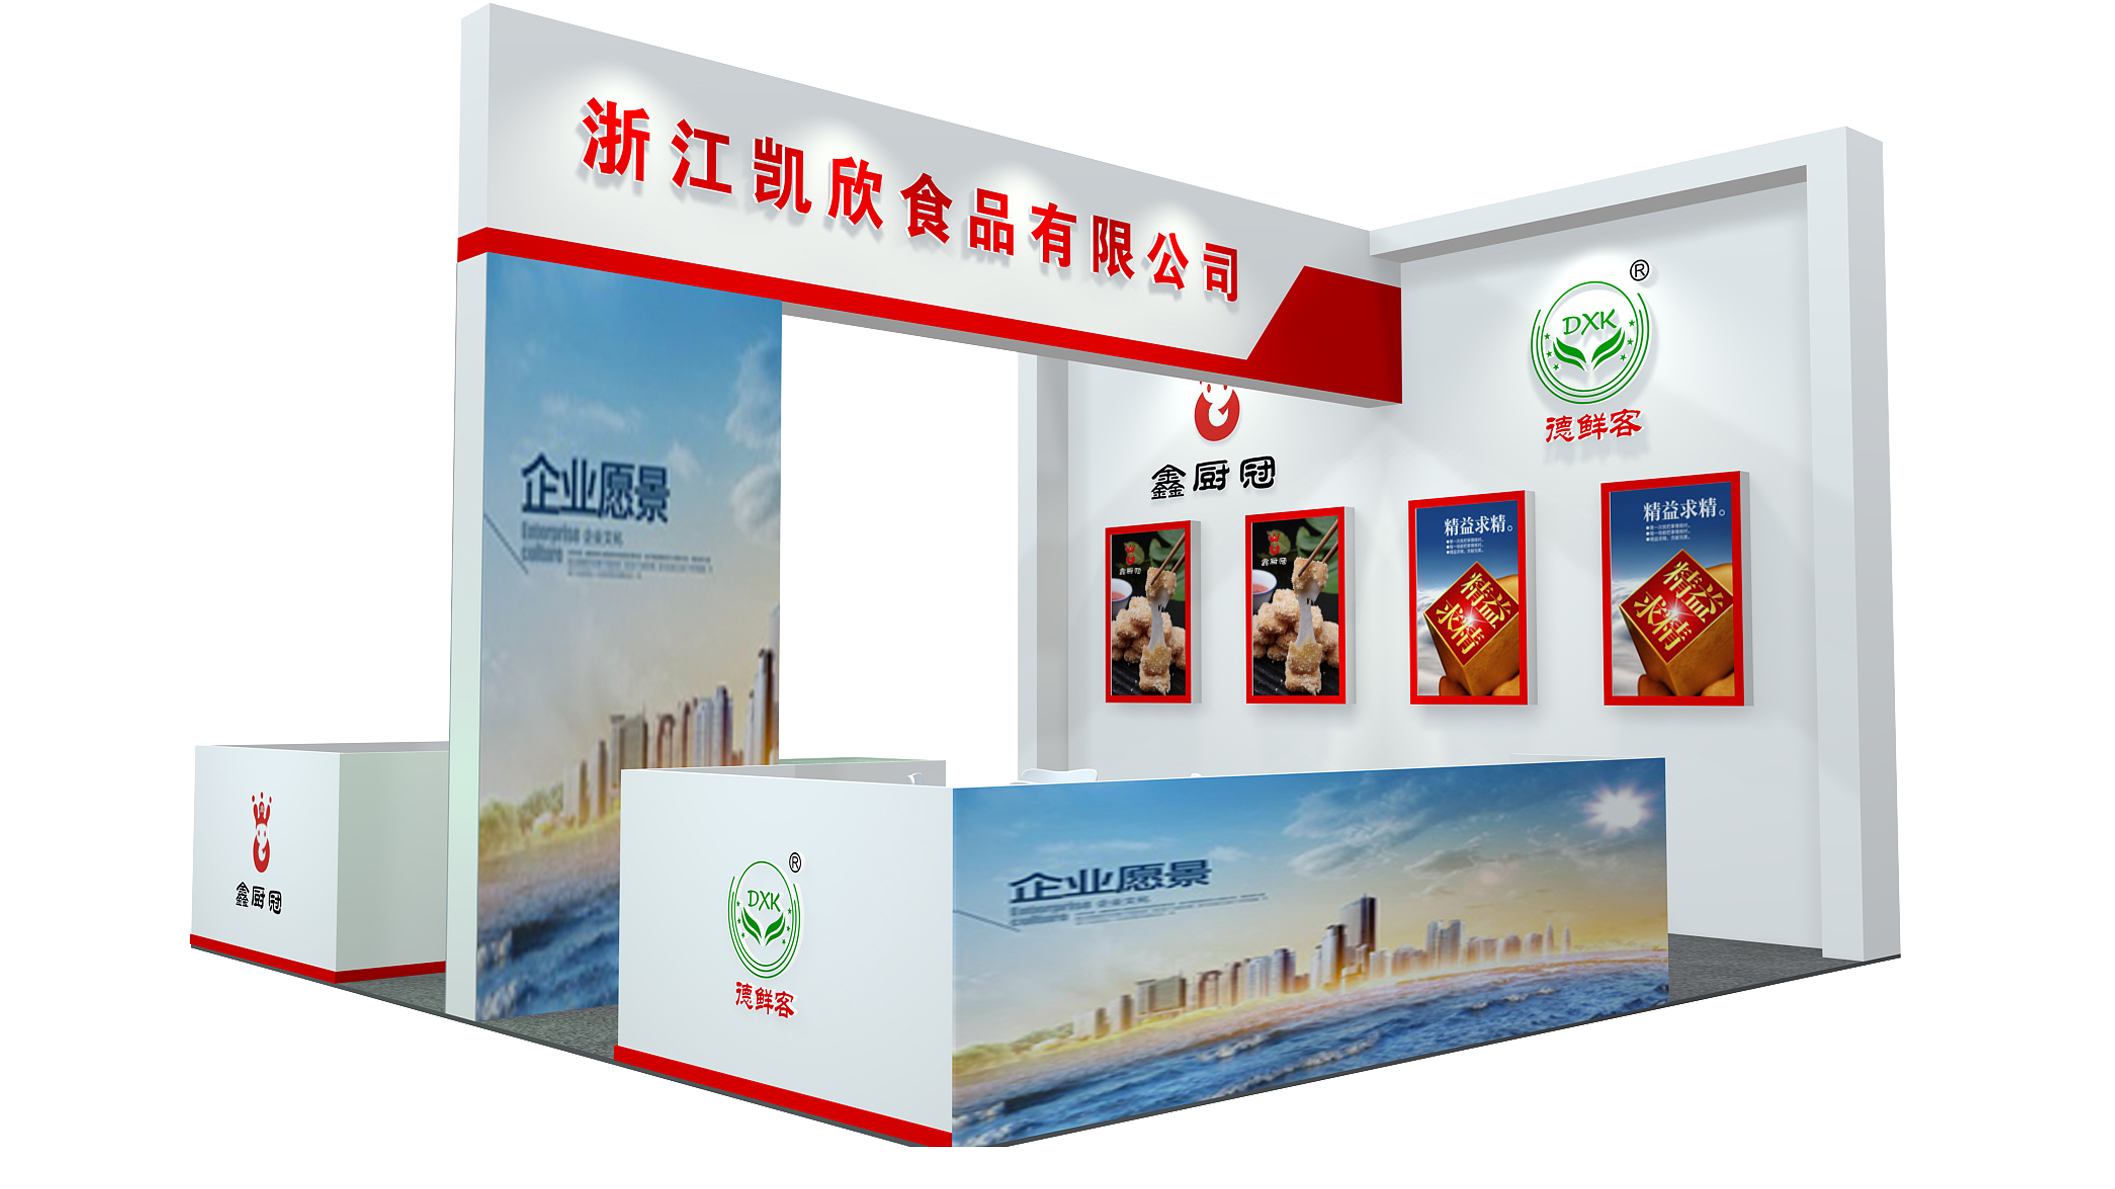 【特装欣赏合集二】 第14届歌华食材展将于8月23-25日亮相上海新国际博览中心(图59)